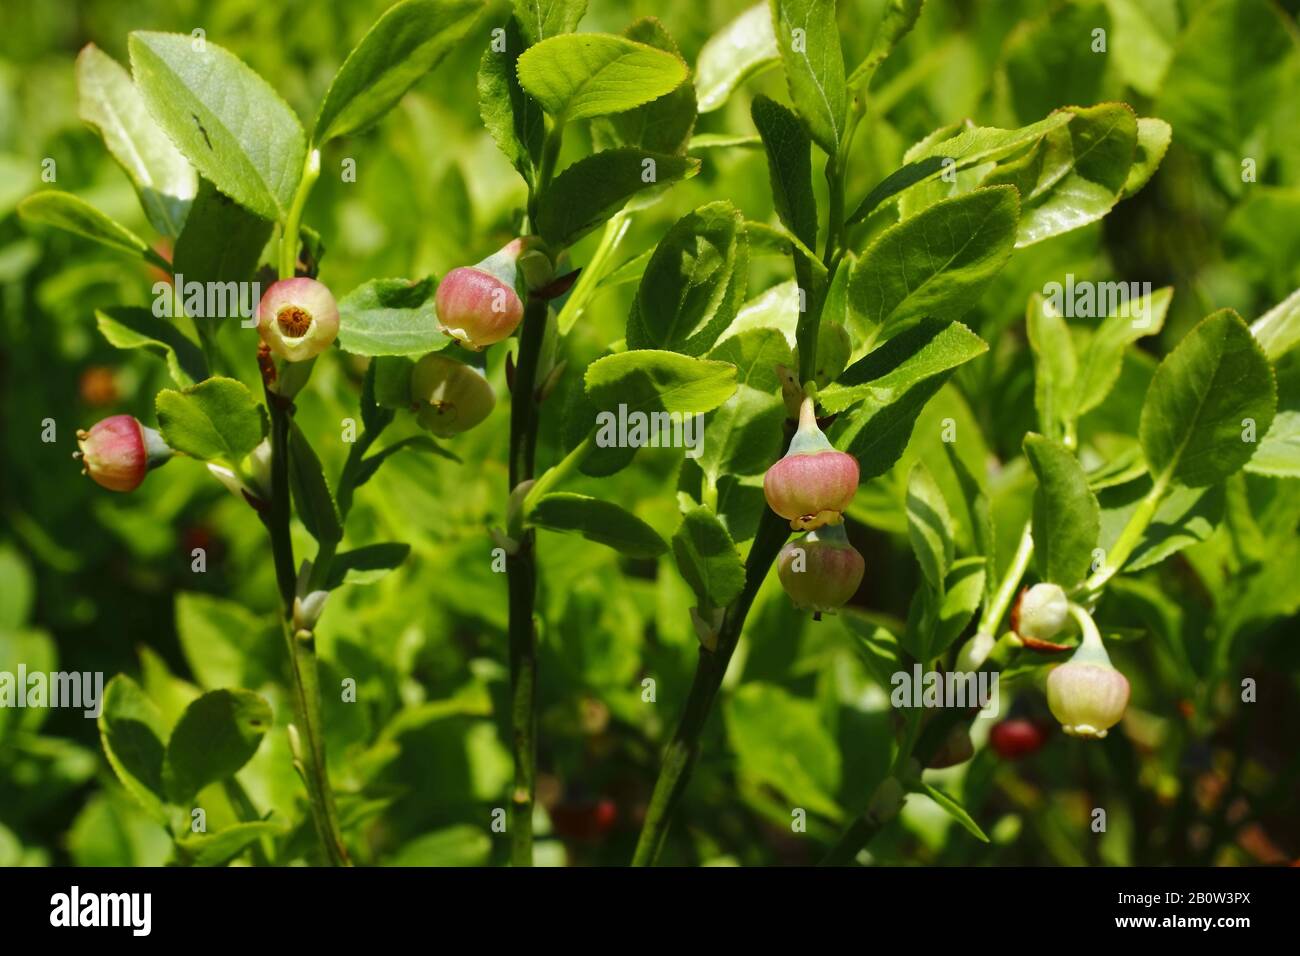 Heidelbeere, Vaccinium myrtillus Stock Photo